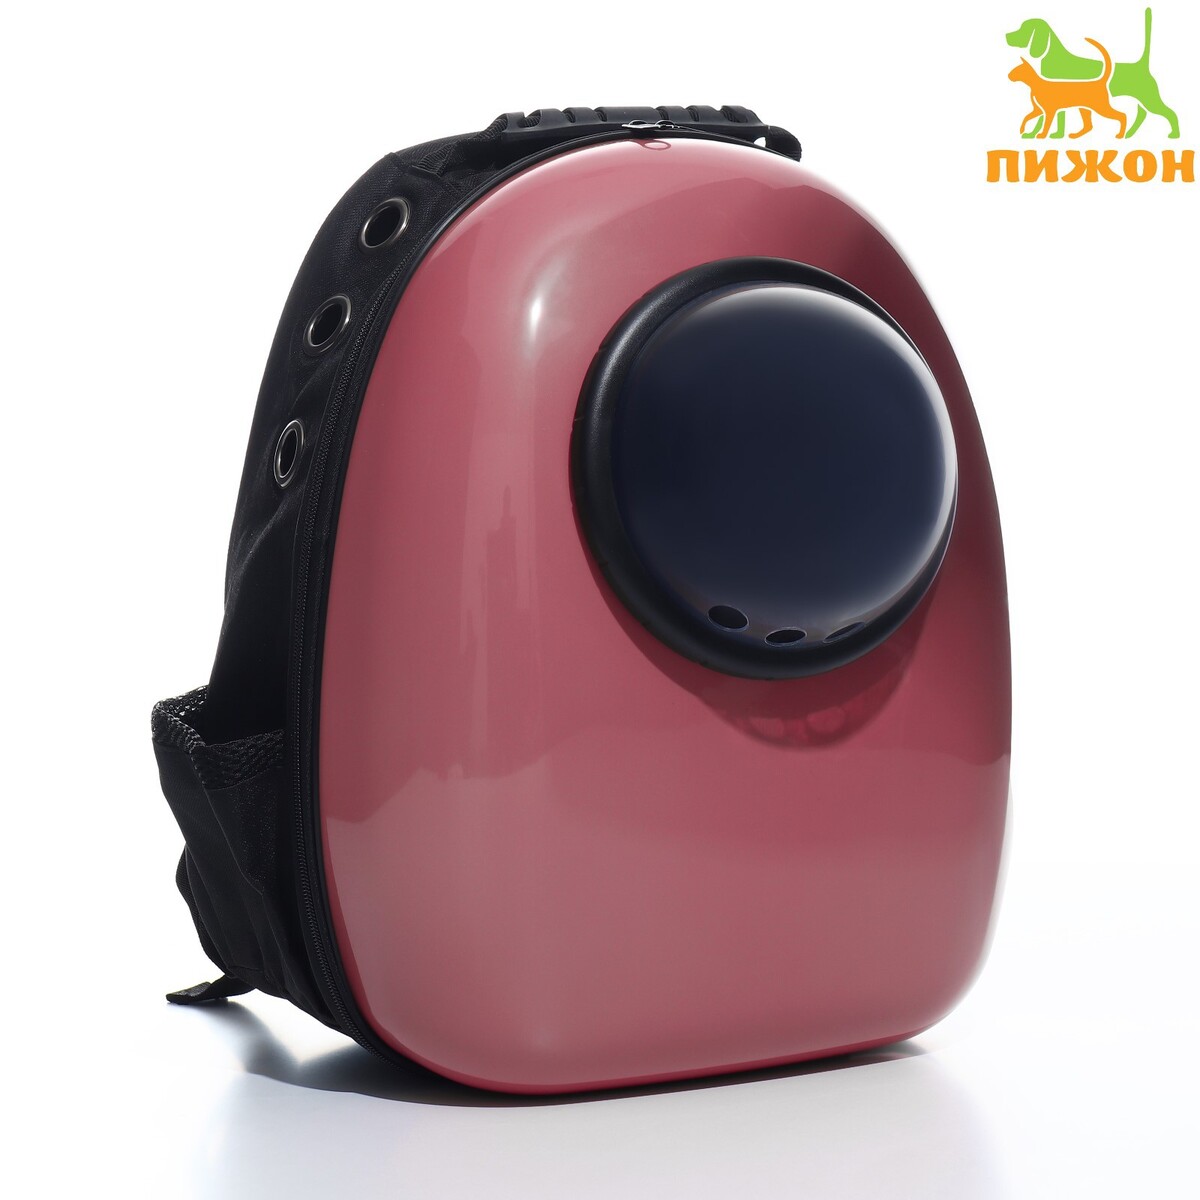 Рюкзак для переноски животных с окном для обзора, 32 х 25 х 42 см, розовый рюкзак для переноски животных с окном для обзора розовый